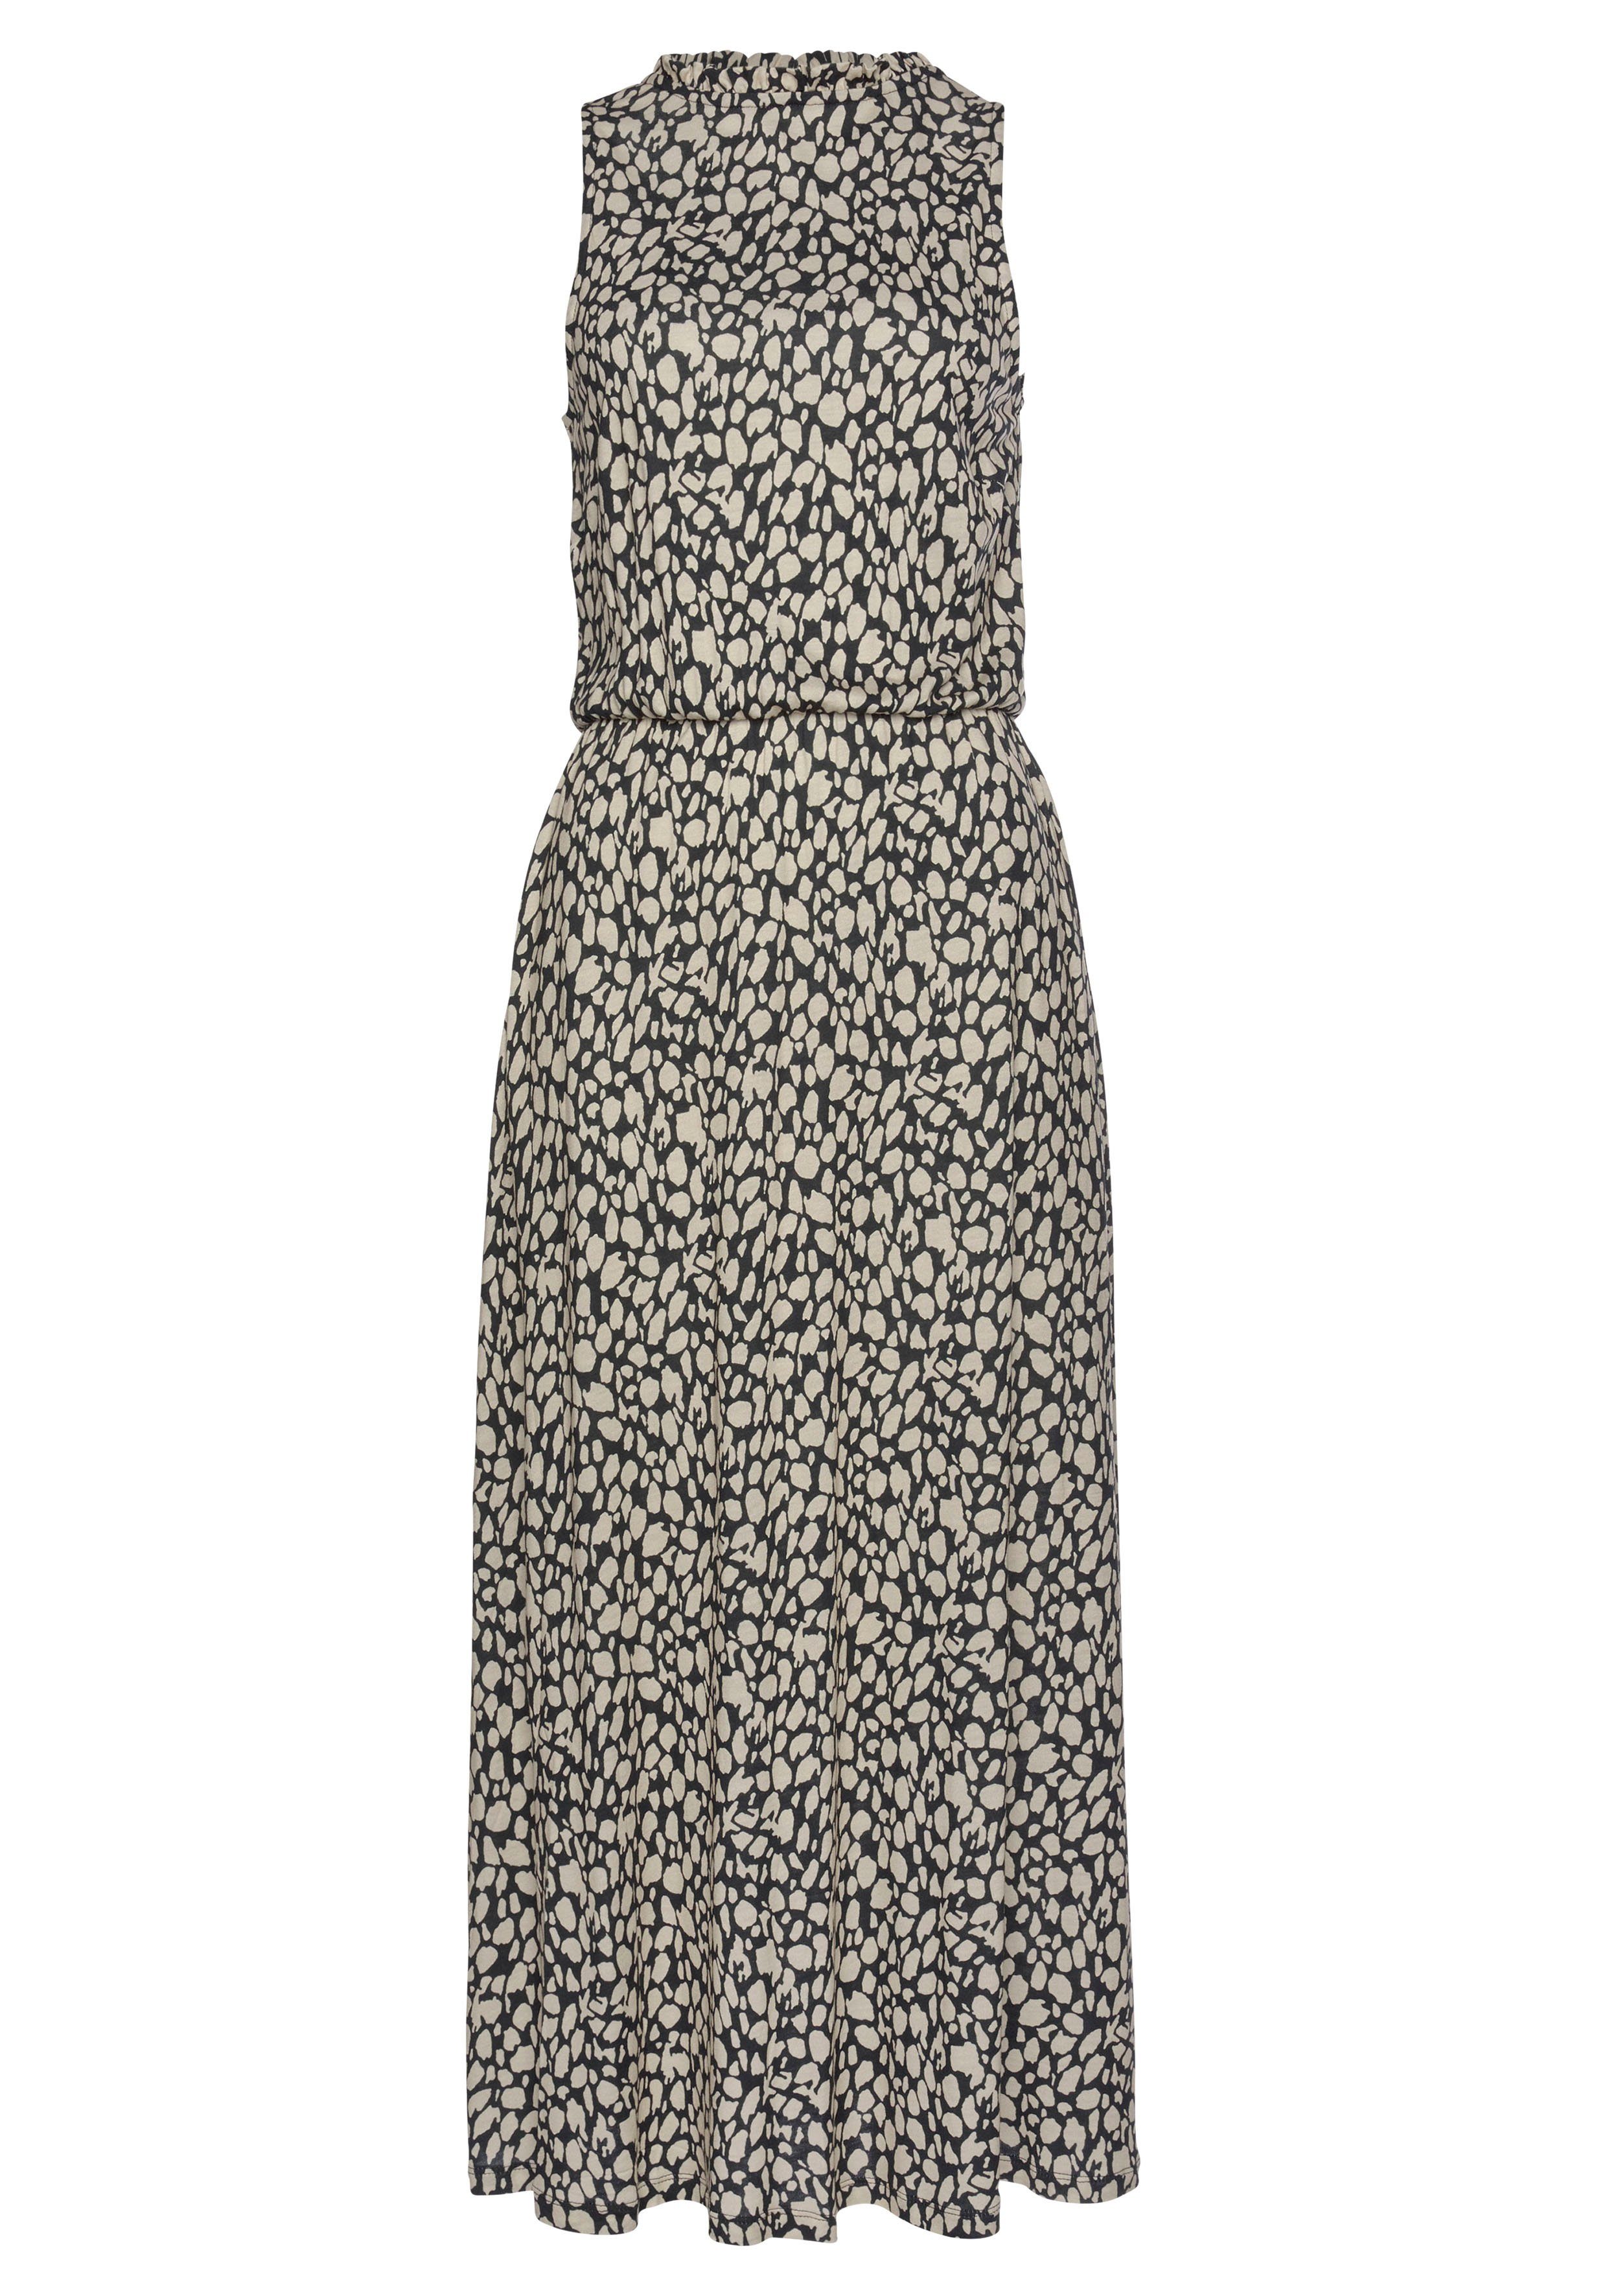 LASCANA Jerseykleid mit Alloverdruck, Midikleid, hochgeschlossen,  sommerlich-elegant